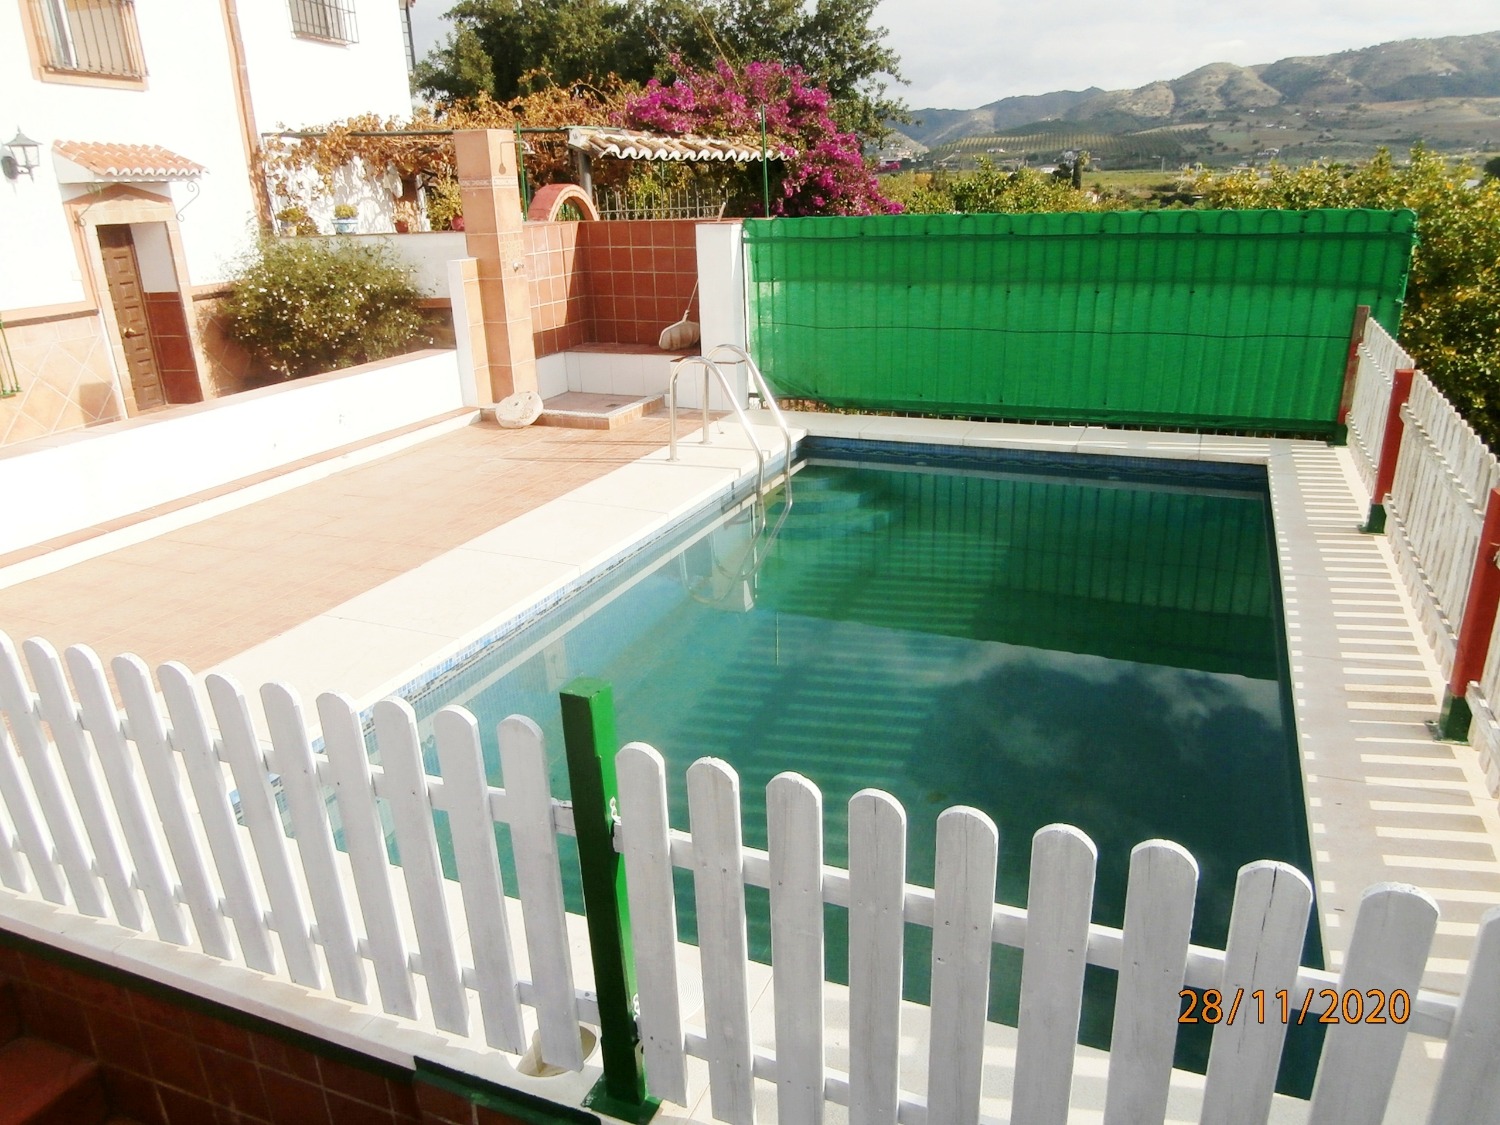 Velký venkovský dům v andaluském stylu s bazénem, orná půda, celý oplocený cca 3220 m2, dobrý přístup.